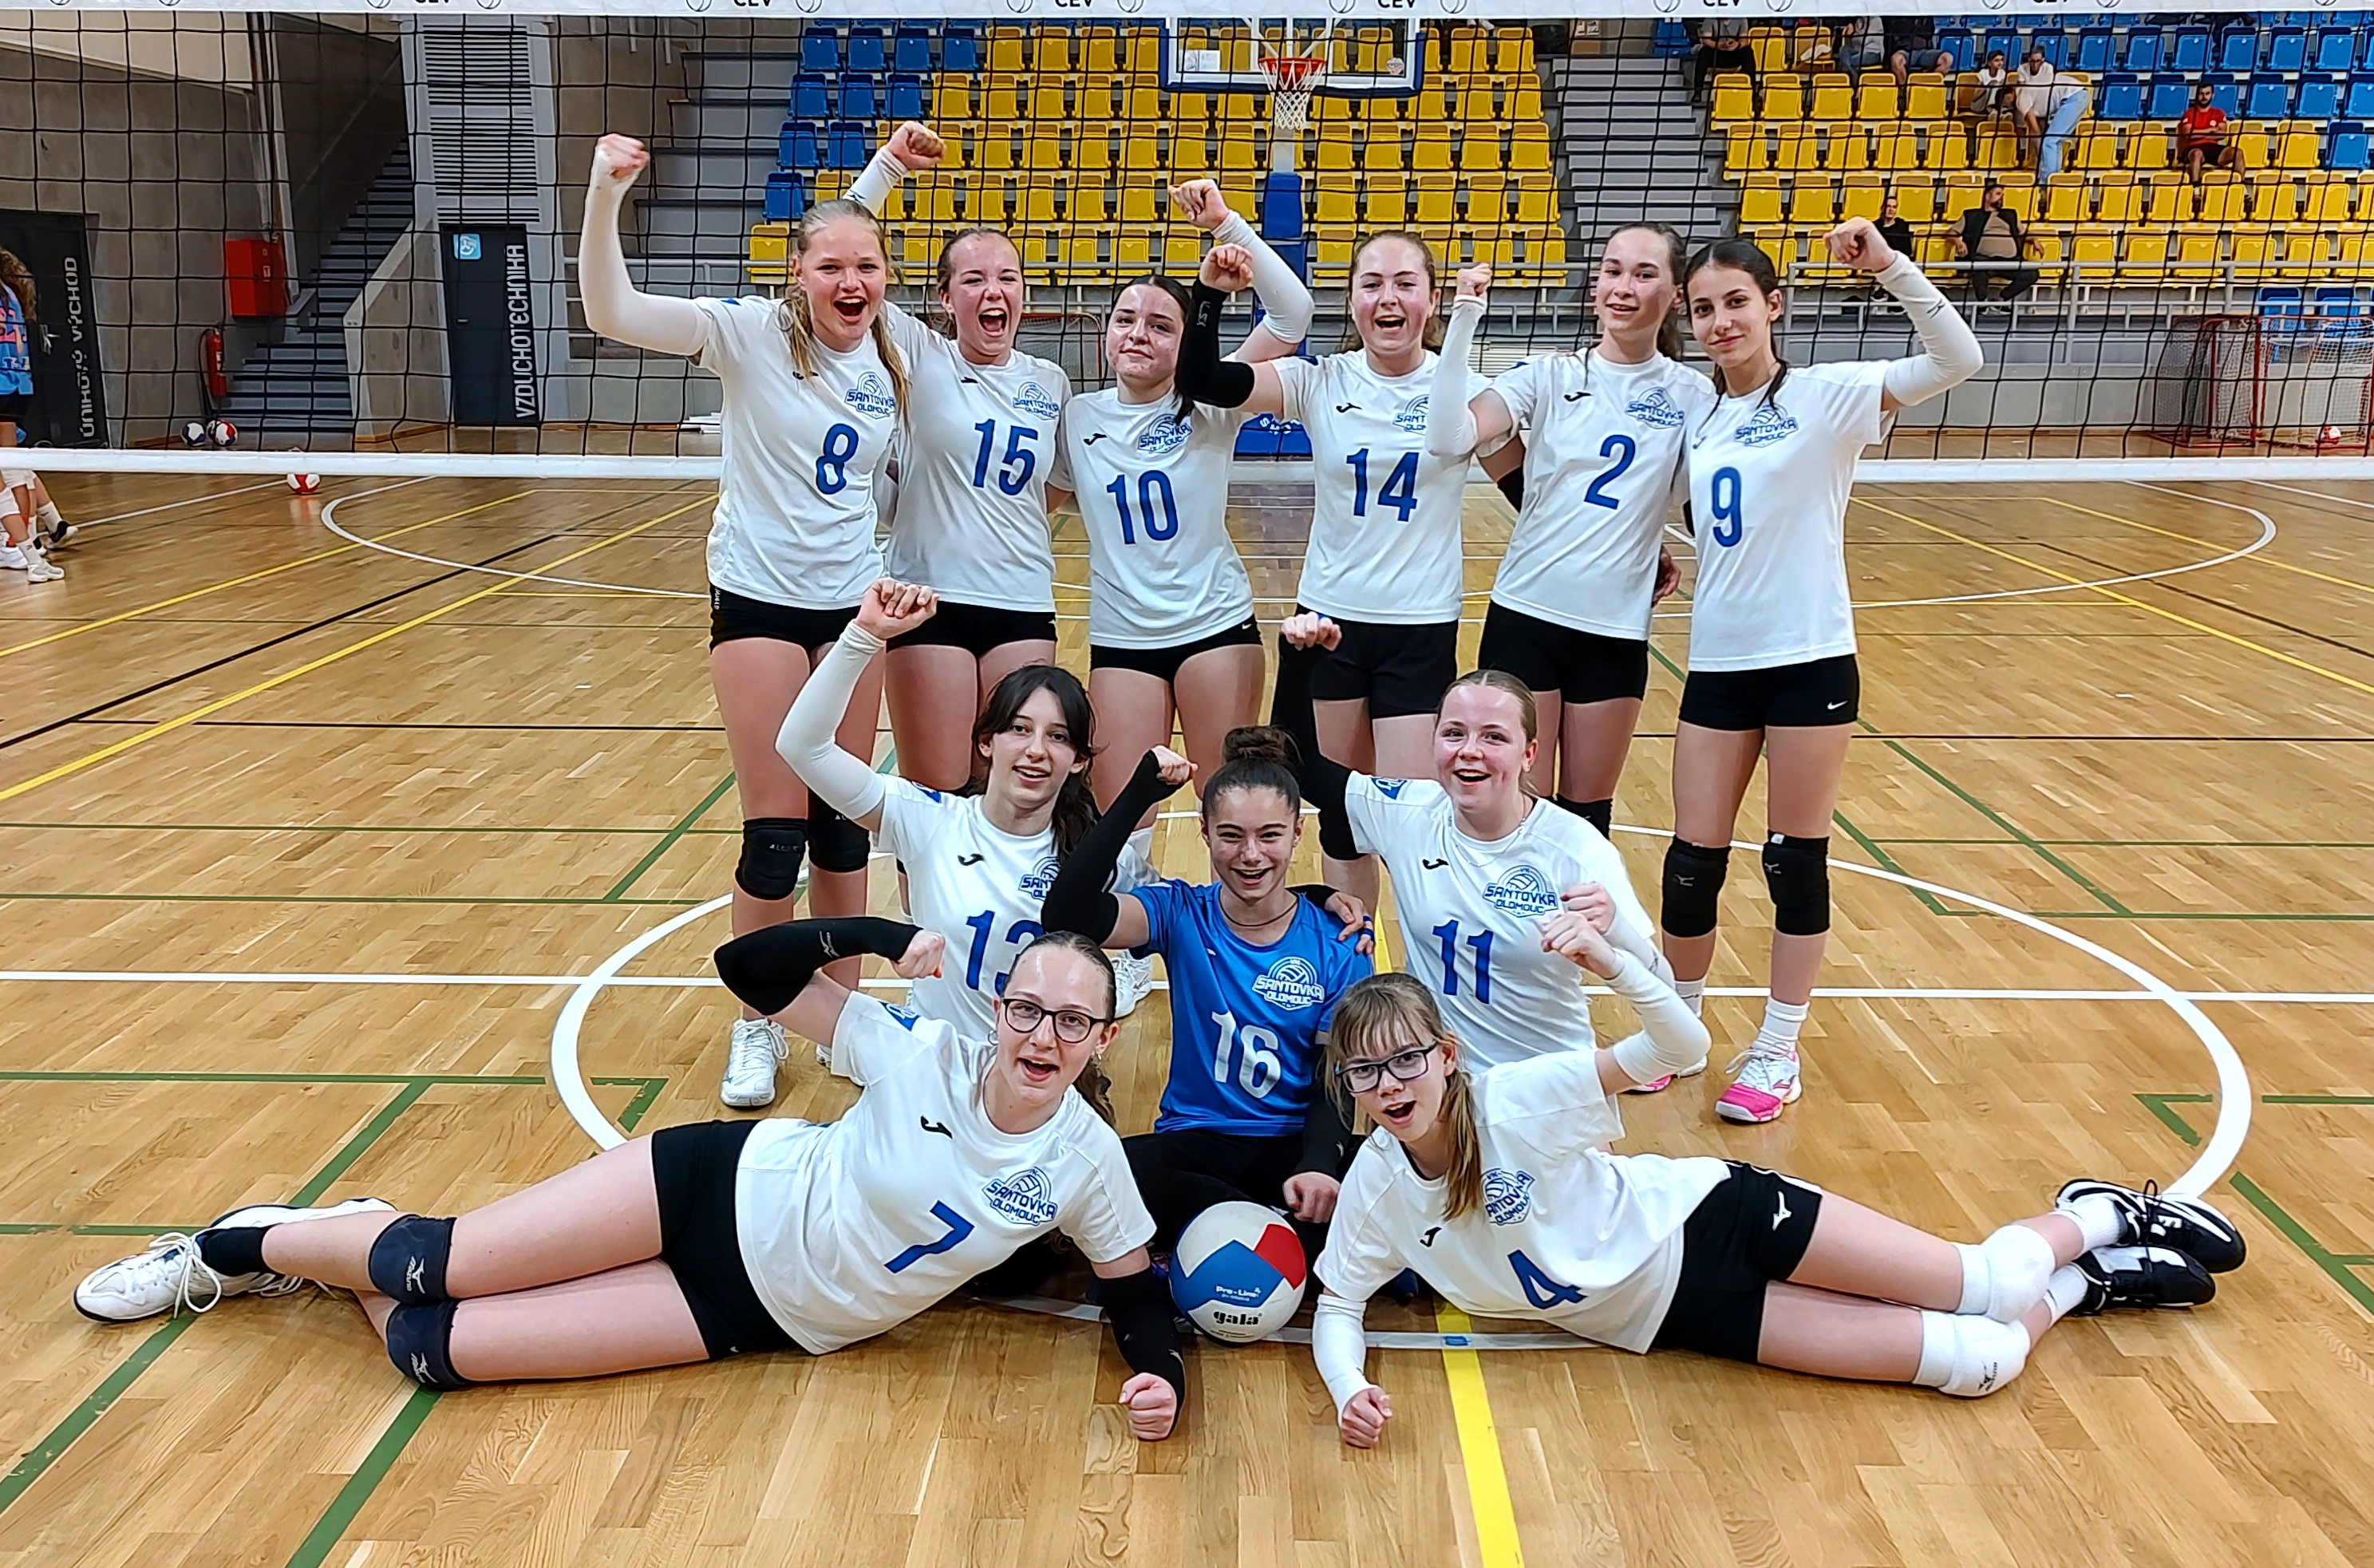 Olomoucká děvčata U14 postoupila na finálový turnaj MČR!